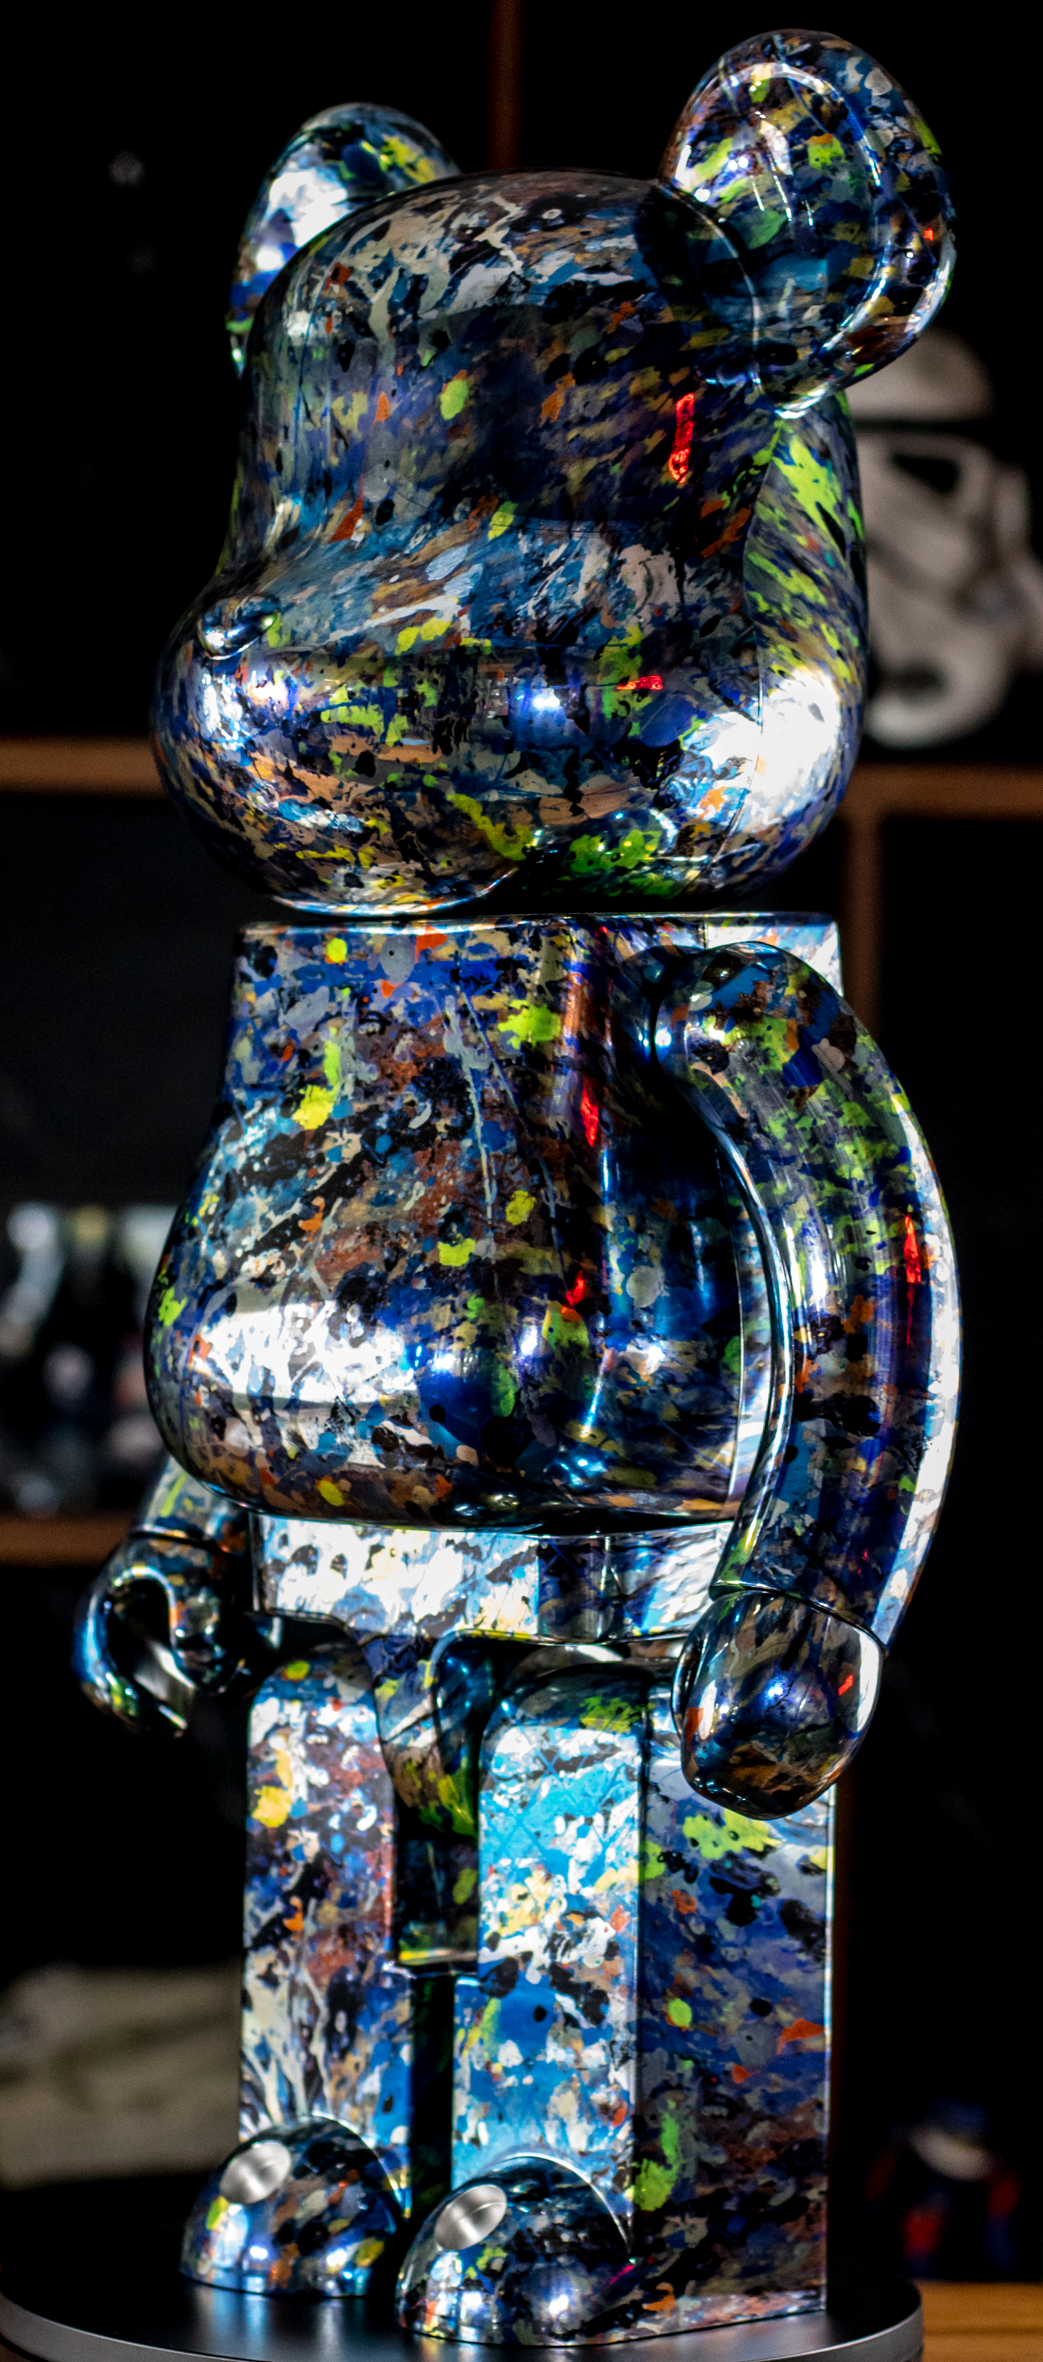 Bearbrick: Jackson Pollock 1000% Chrome "Splash"